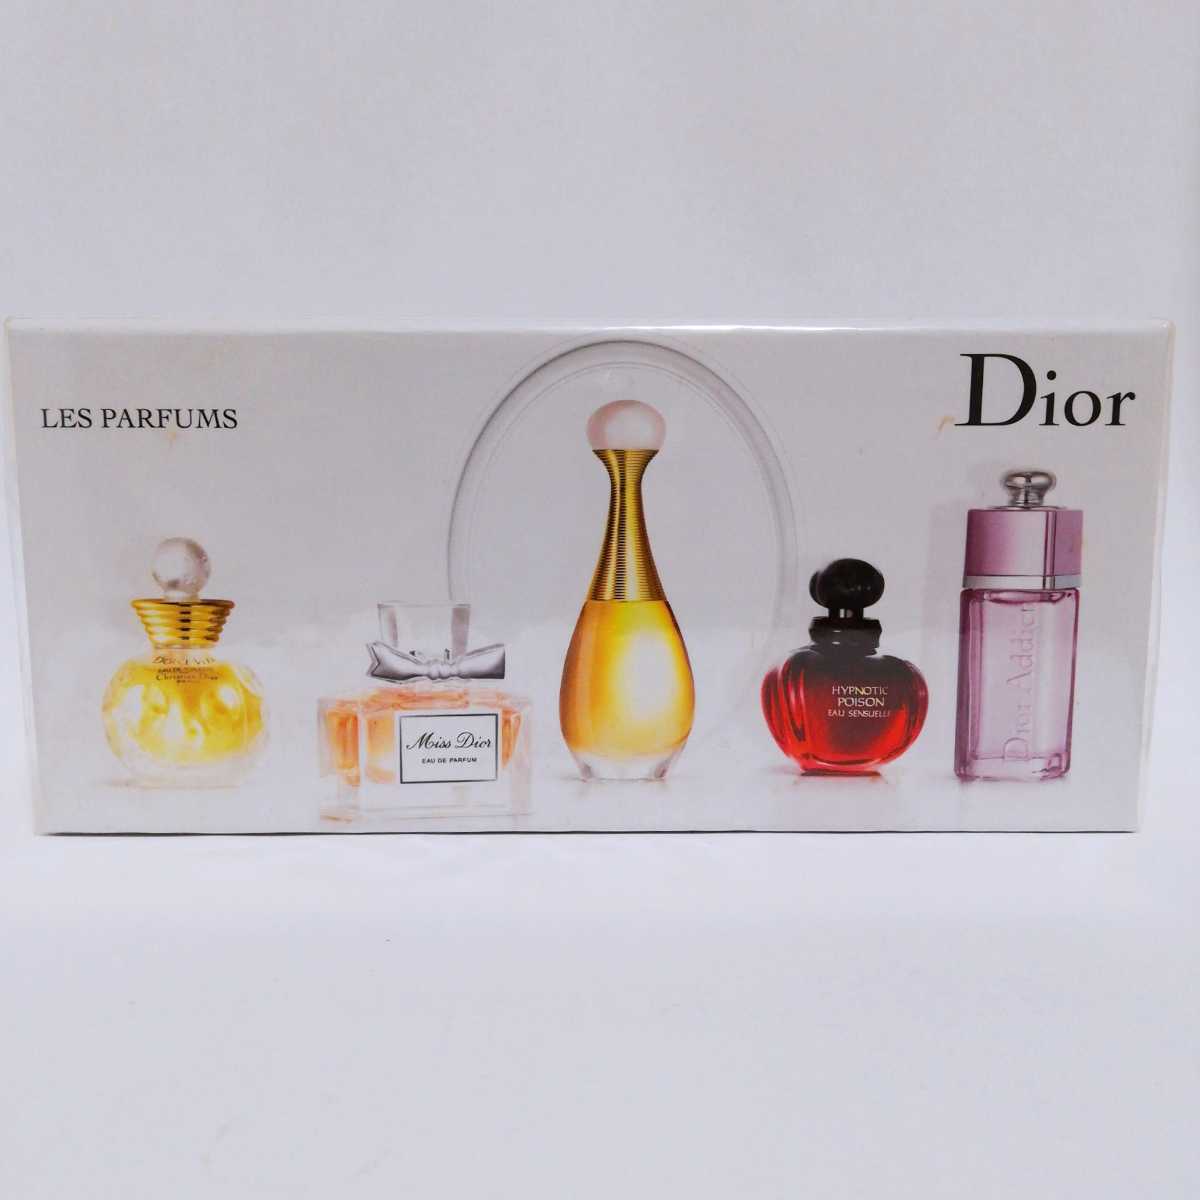 1500円 喜ばれる誕生日プレゼント Dior 香水5本セット